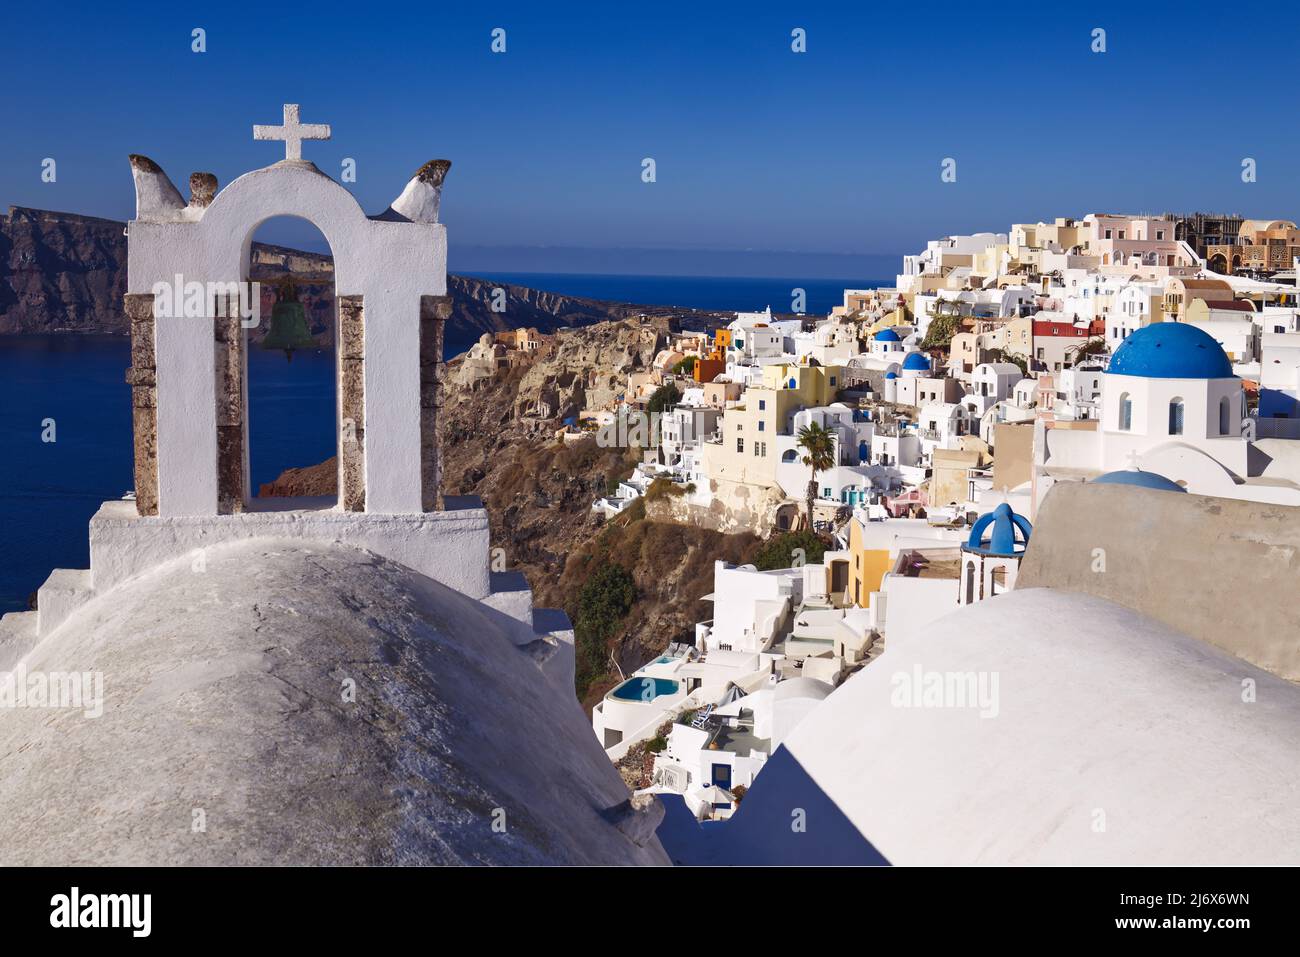 Oia, Santorini, Isole Greche, Grecia - Campanile, chiese con cupole blu, case, negozi e altri edifici bianchi sulla scogliera in un sole abbagliante Foto Stock